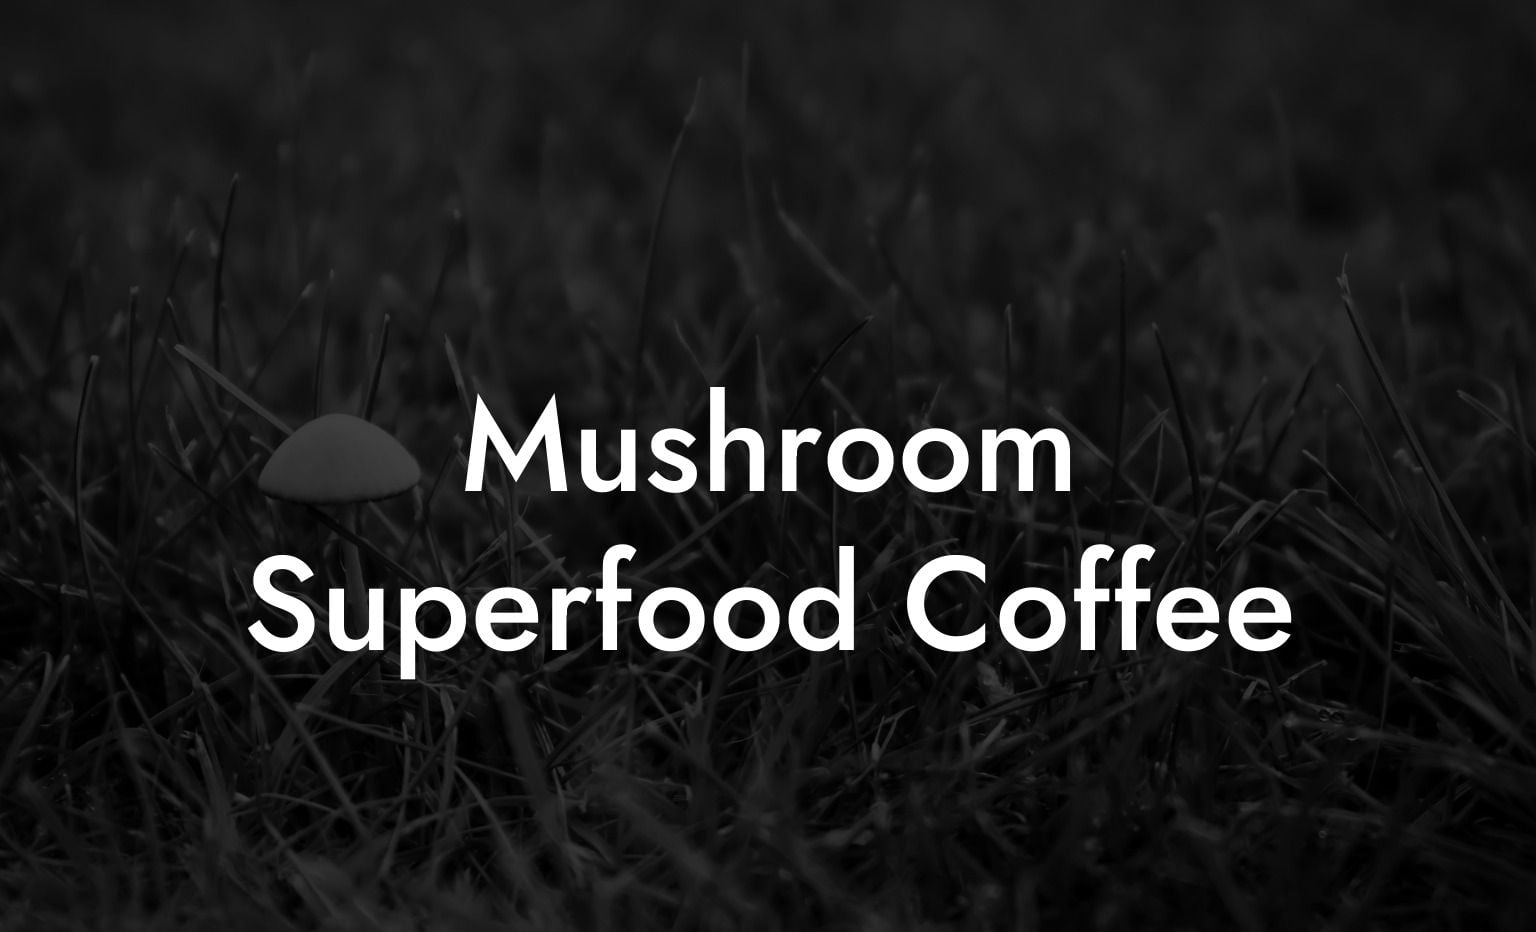 Mushroom Superfood Coffee